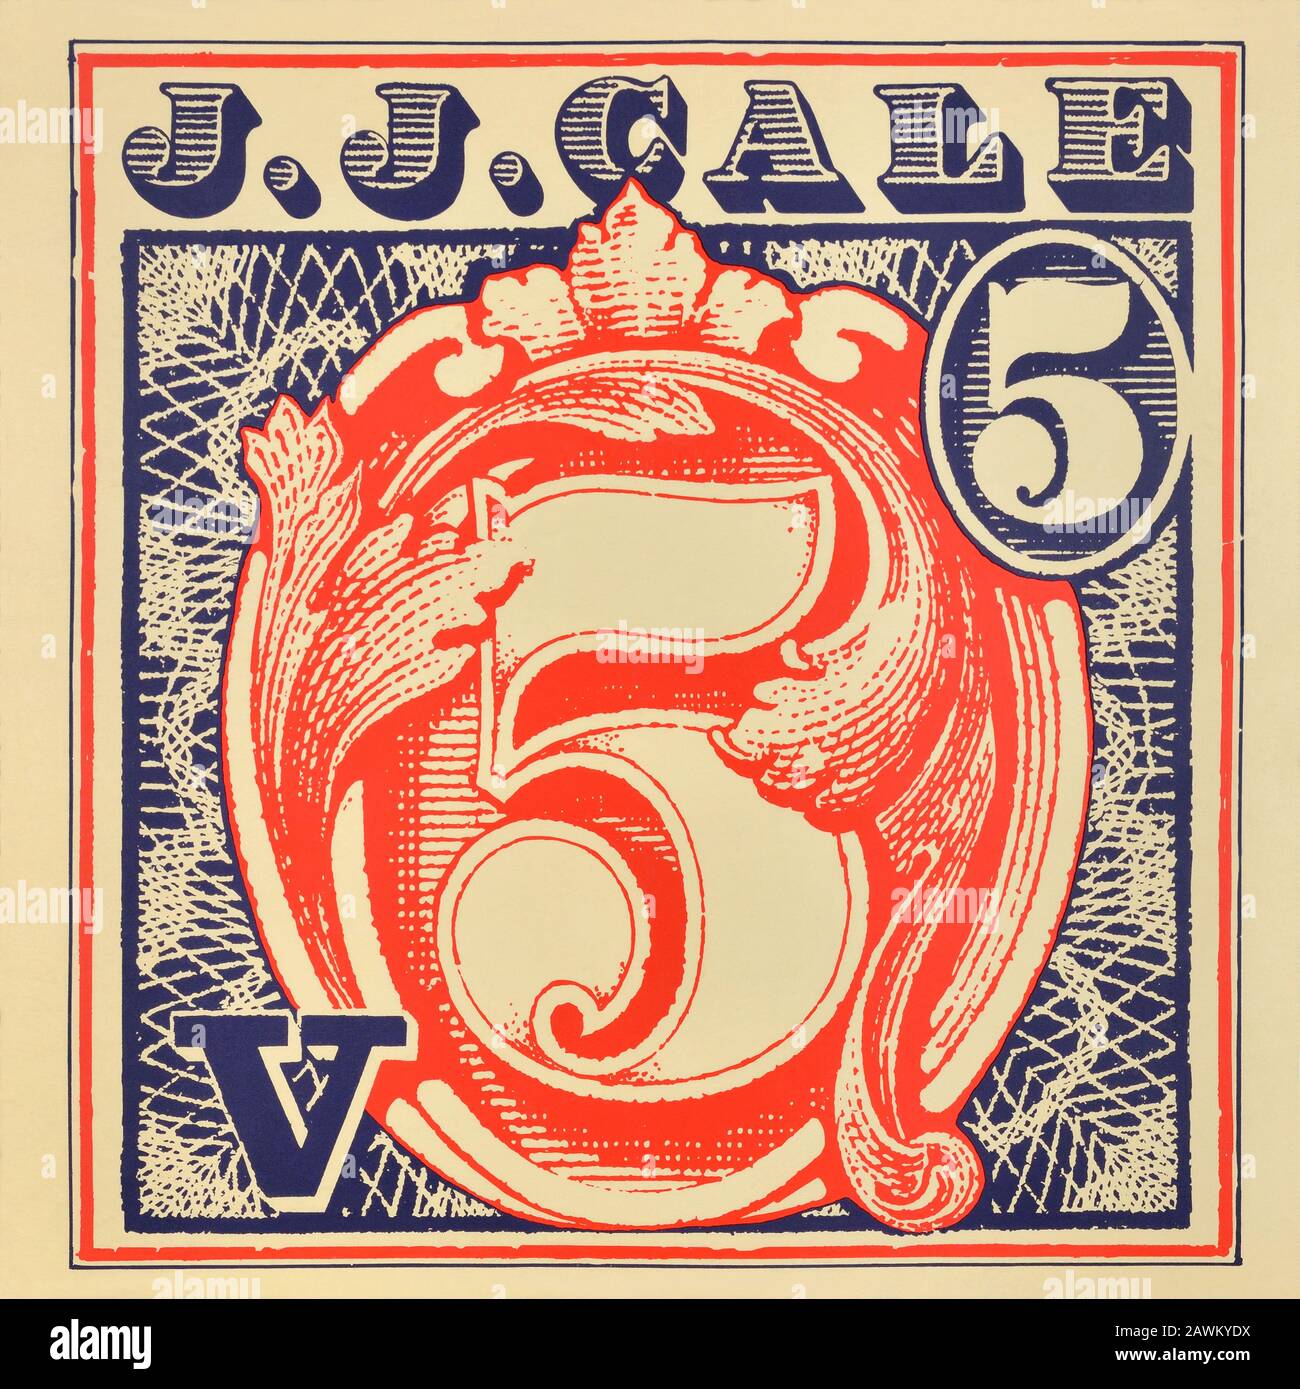 J.J. Cale - copertina originale dell'album in vinile - 5 (cinque) - 1979 Foto Stock